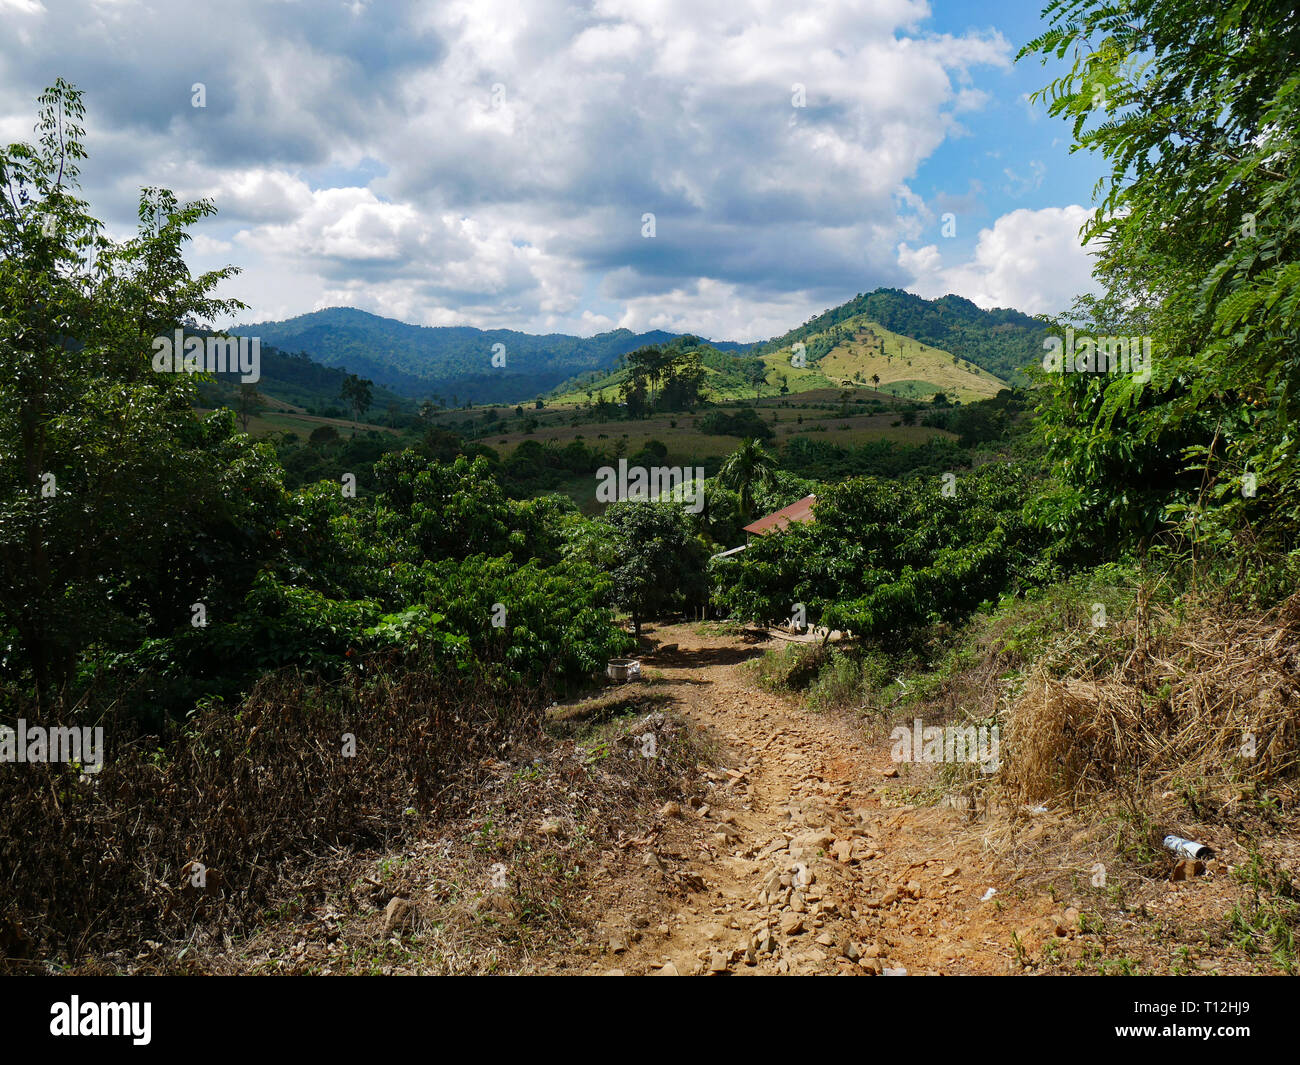 Cambogia. La bellissima campagna a Pailin provincia. A stony via conduce giù in una valle con vegetazione tropicale e le montagne sullo sfondo Foto Stock